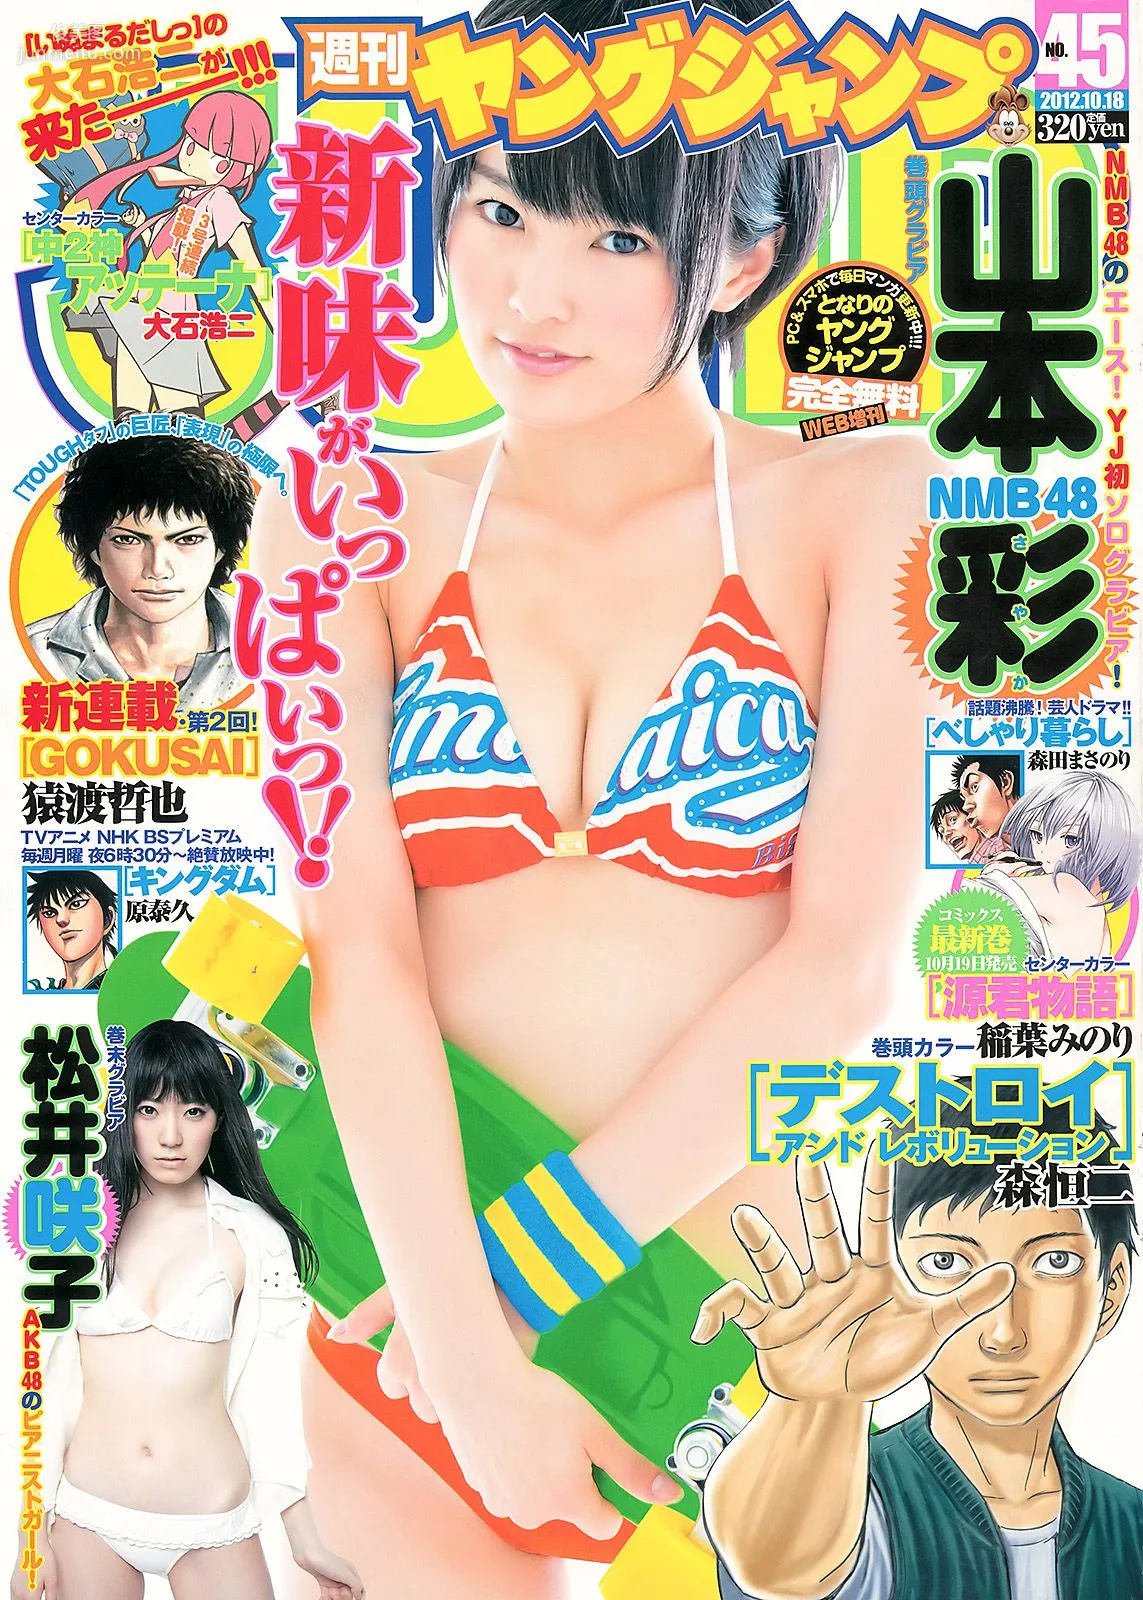 山本彩 松井咲子 [Weekly Young Jump] 2012年No.45 写真杂志1